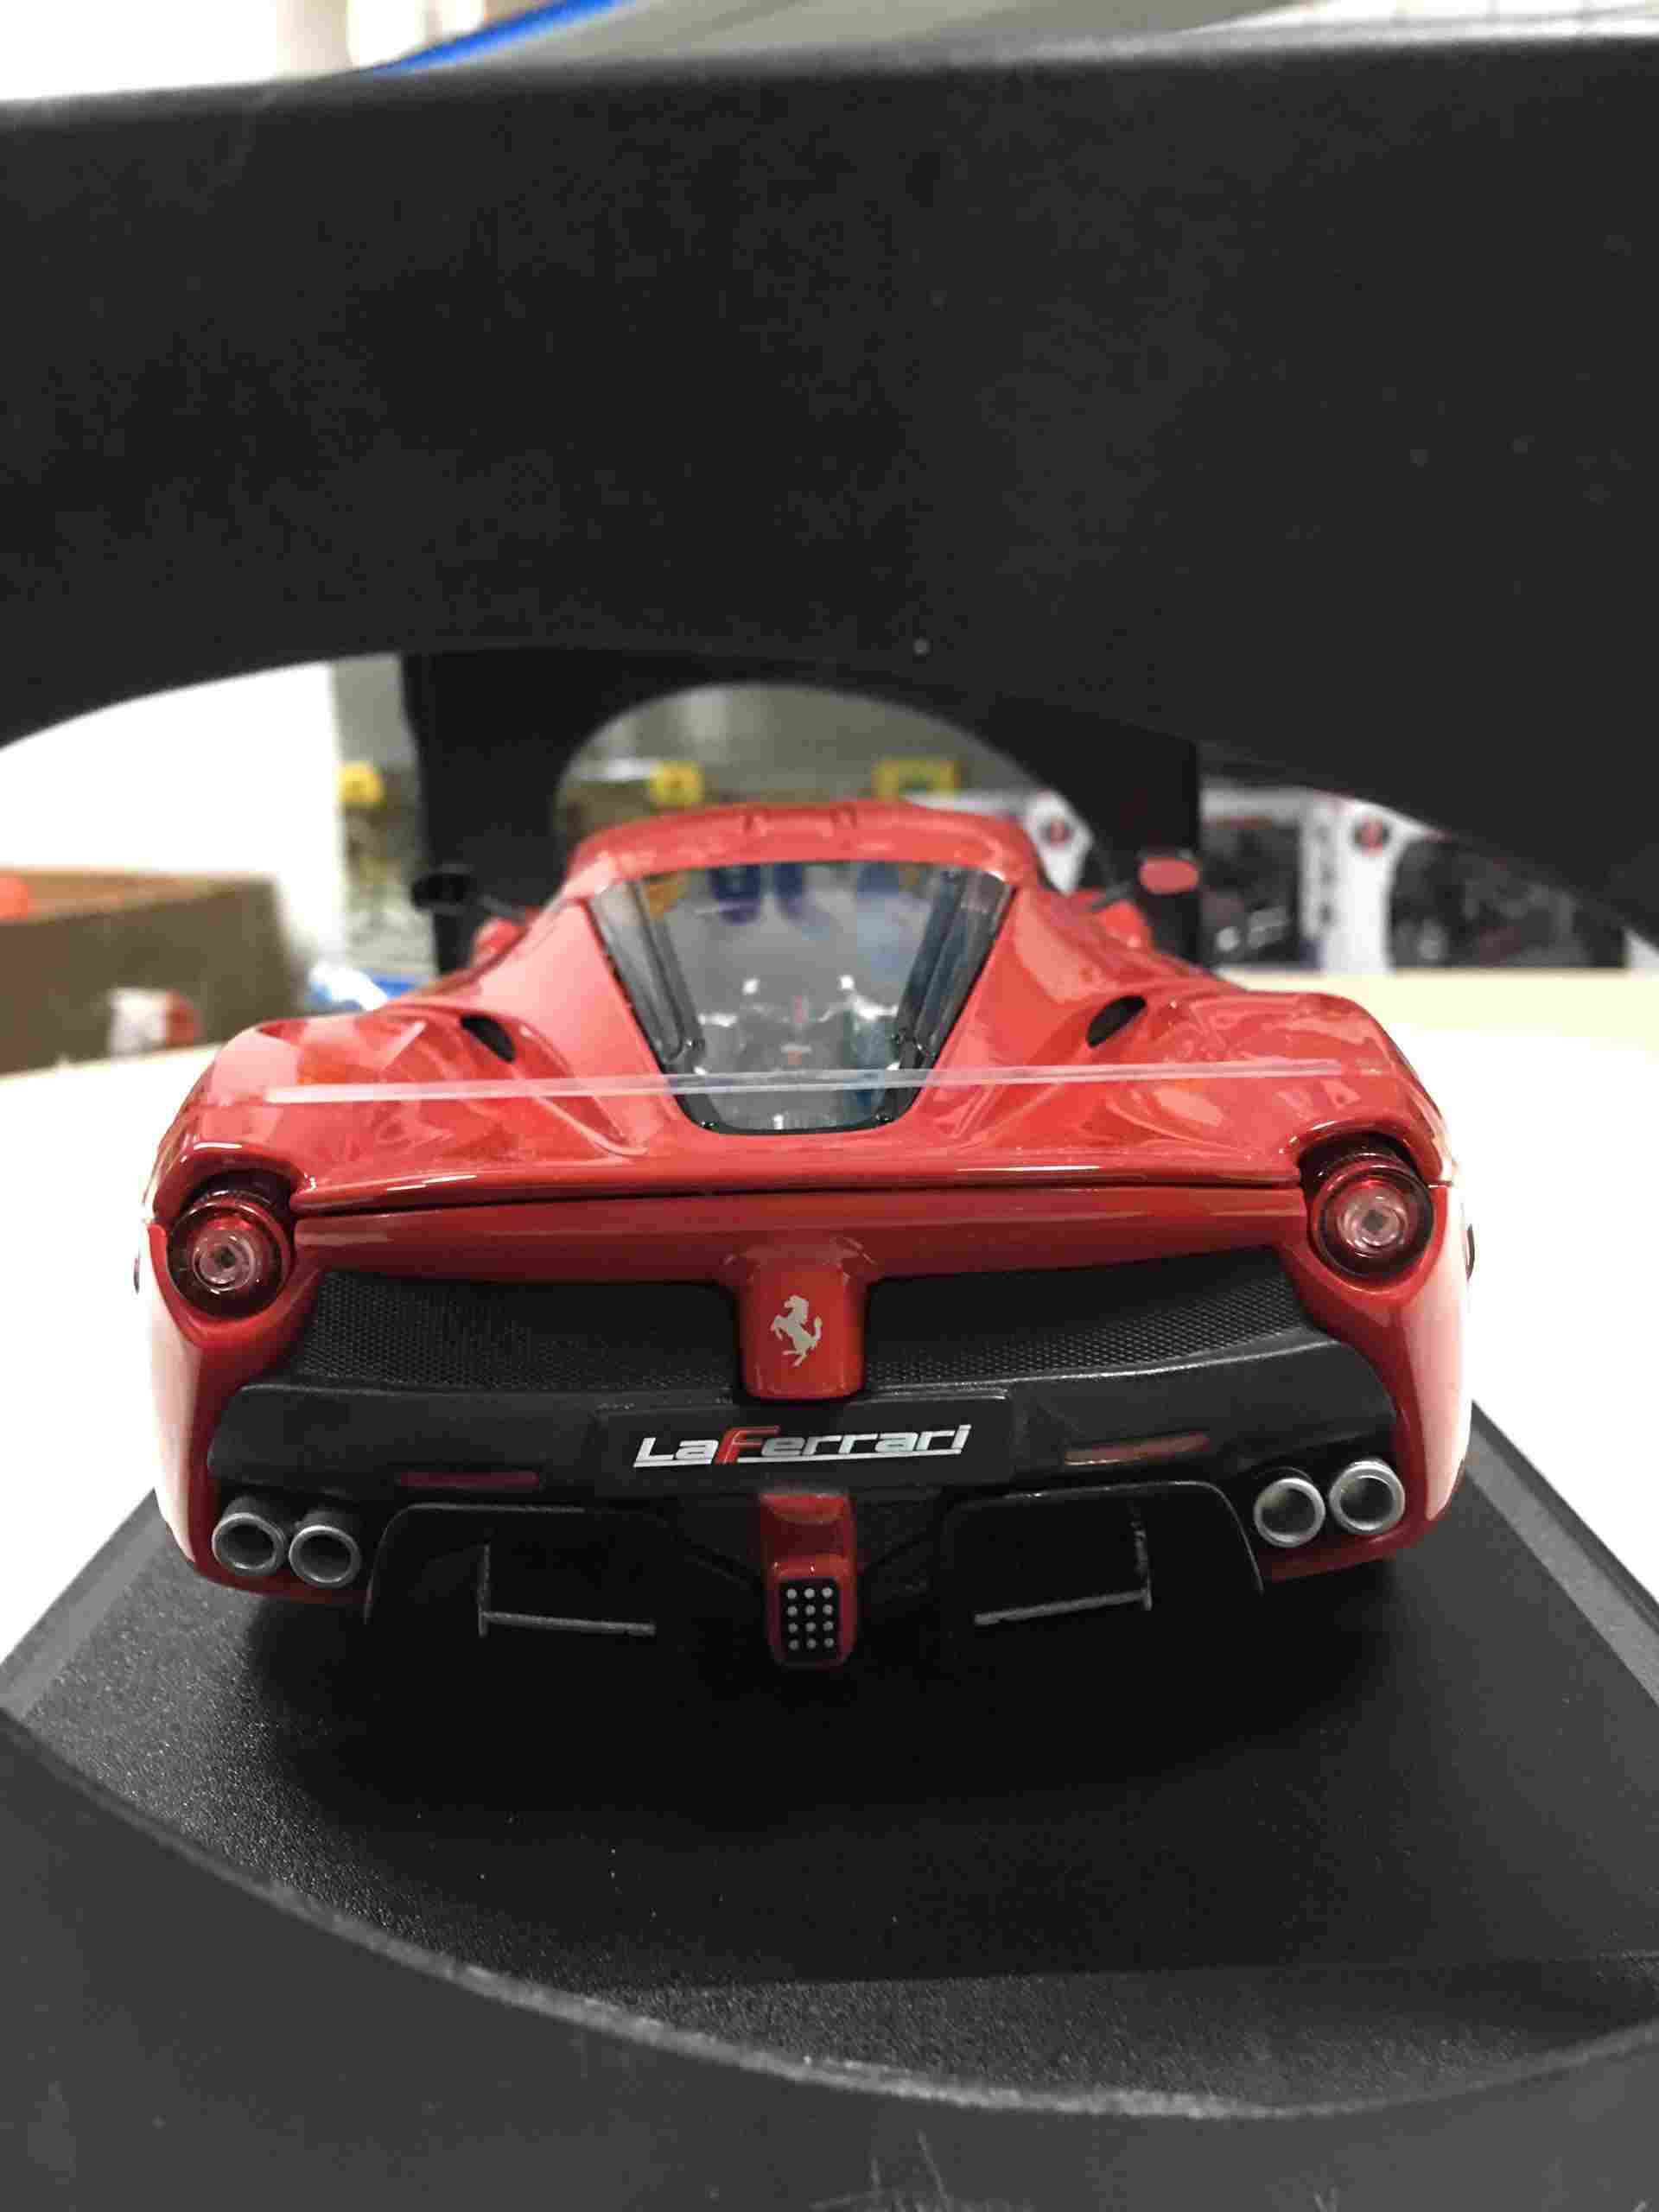 SP005477 - [Burago] Ferrari LAFA Laferrari 118 [Red]